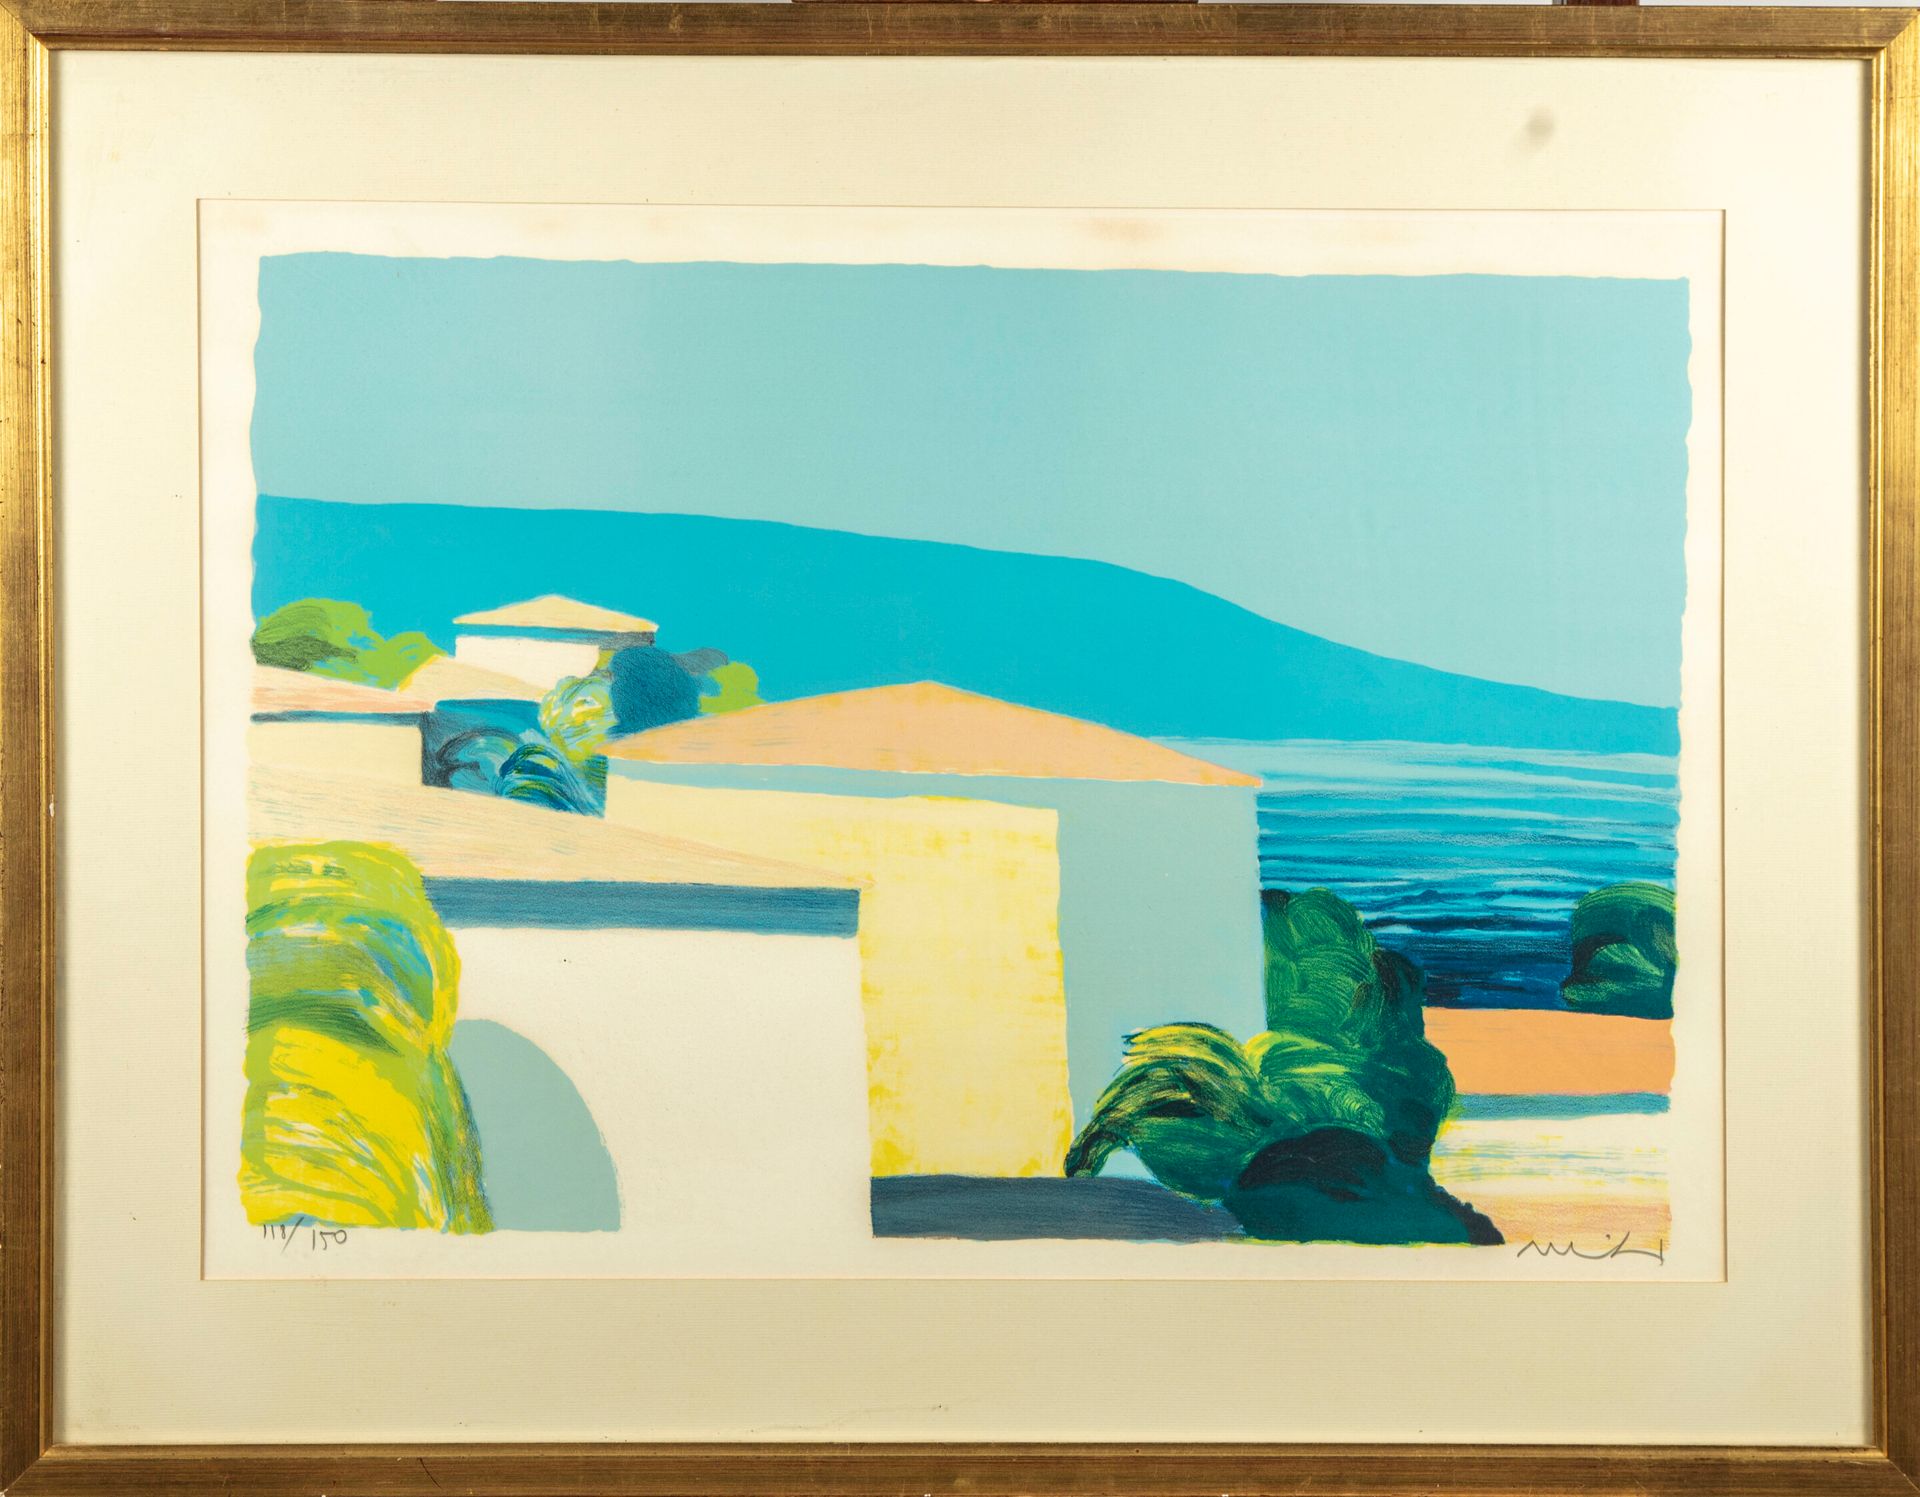 Null Roger MUHL (1929-2008)

Landschaft

Lithographie, gegengezeichnet und numme&hellip;